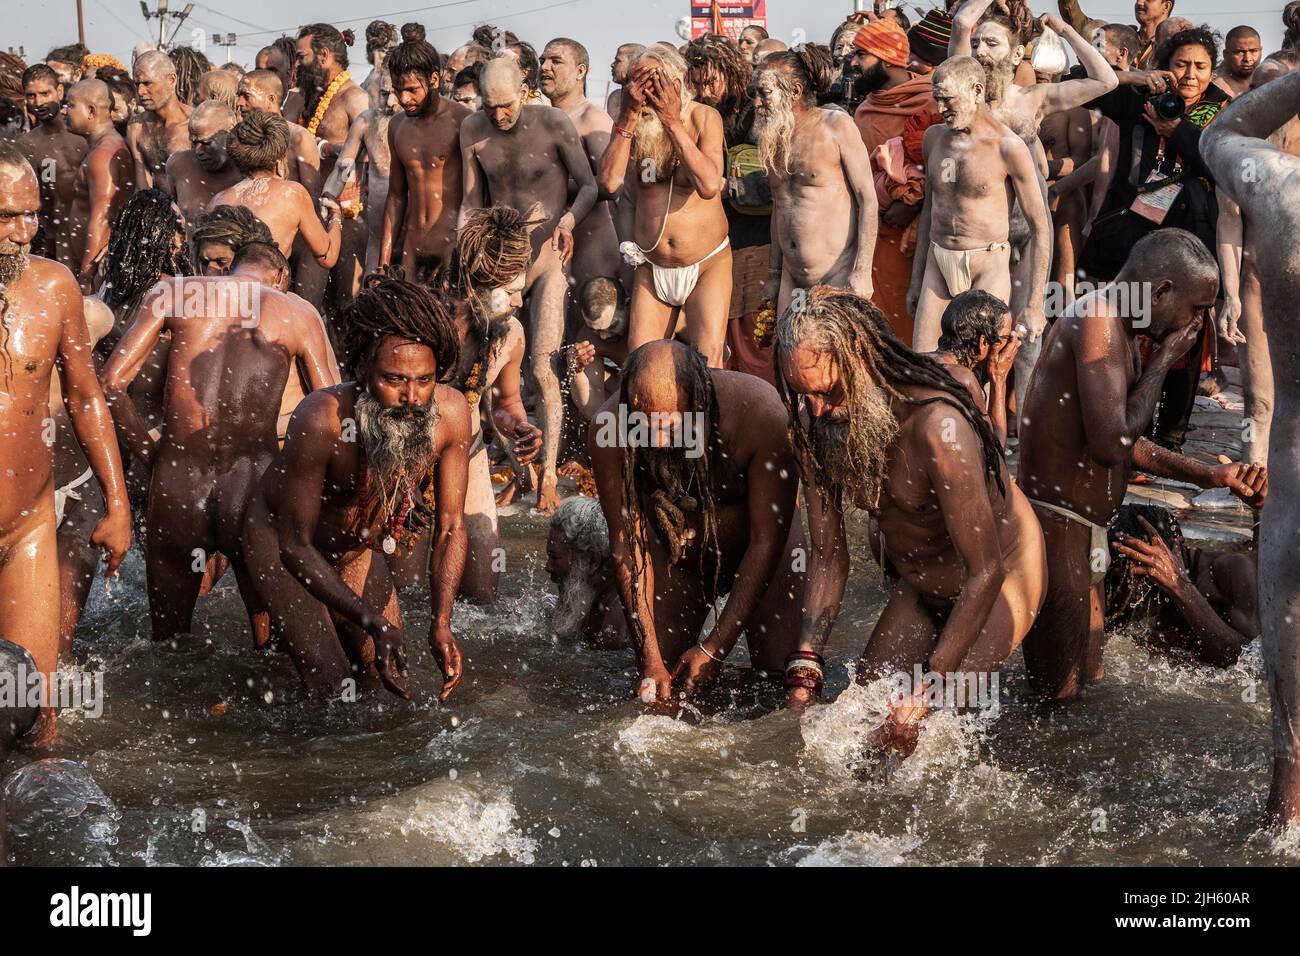 Naga Sadhus (hommes saints indiens) se baignant dans les eaux sacrées du Sangam, le jour le plus propice du festival Kumbh Mela à Allahabad, en Inde. Banque D'Images